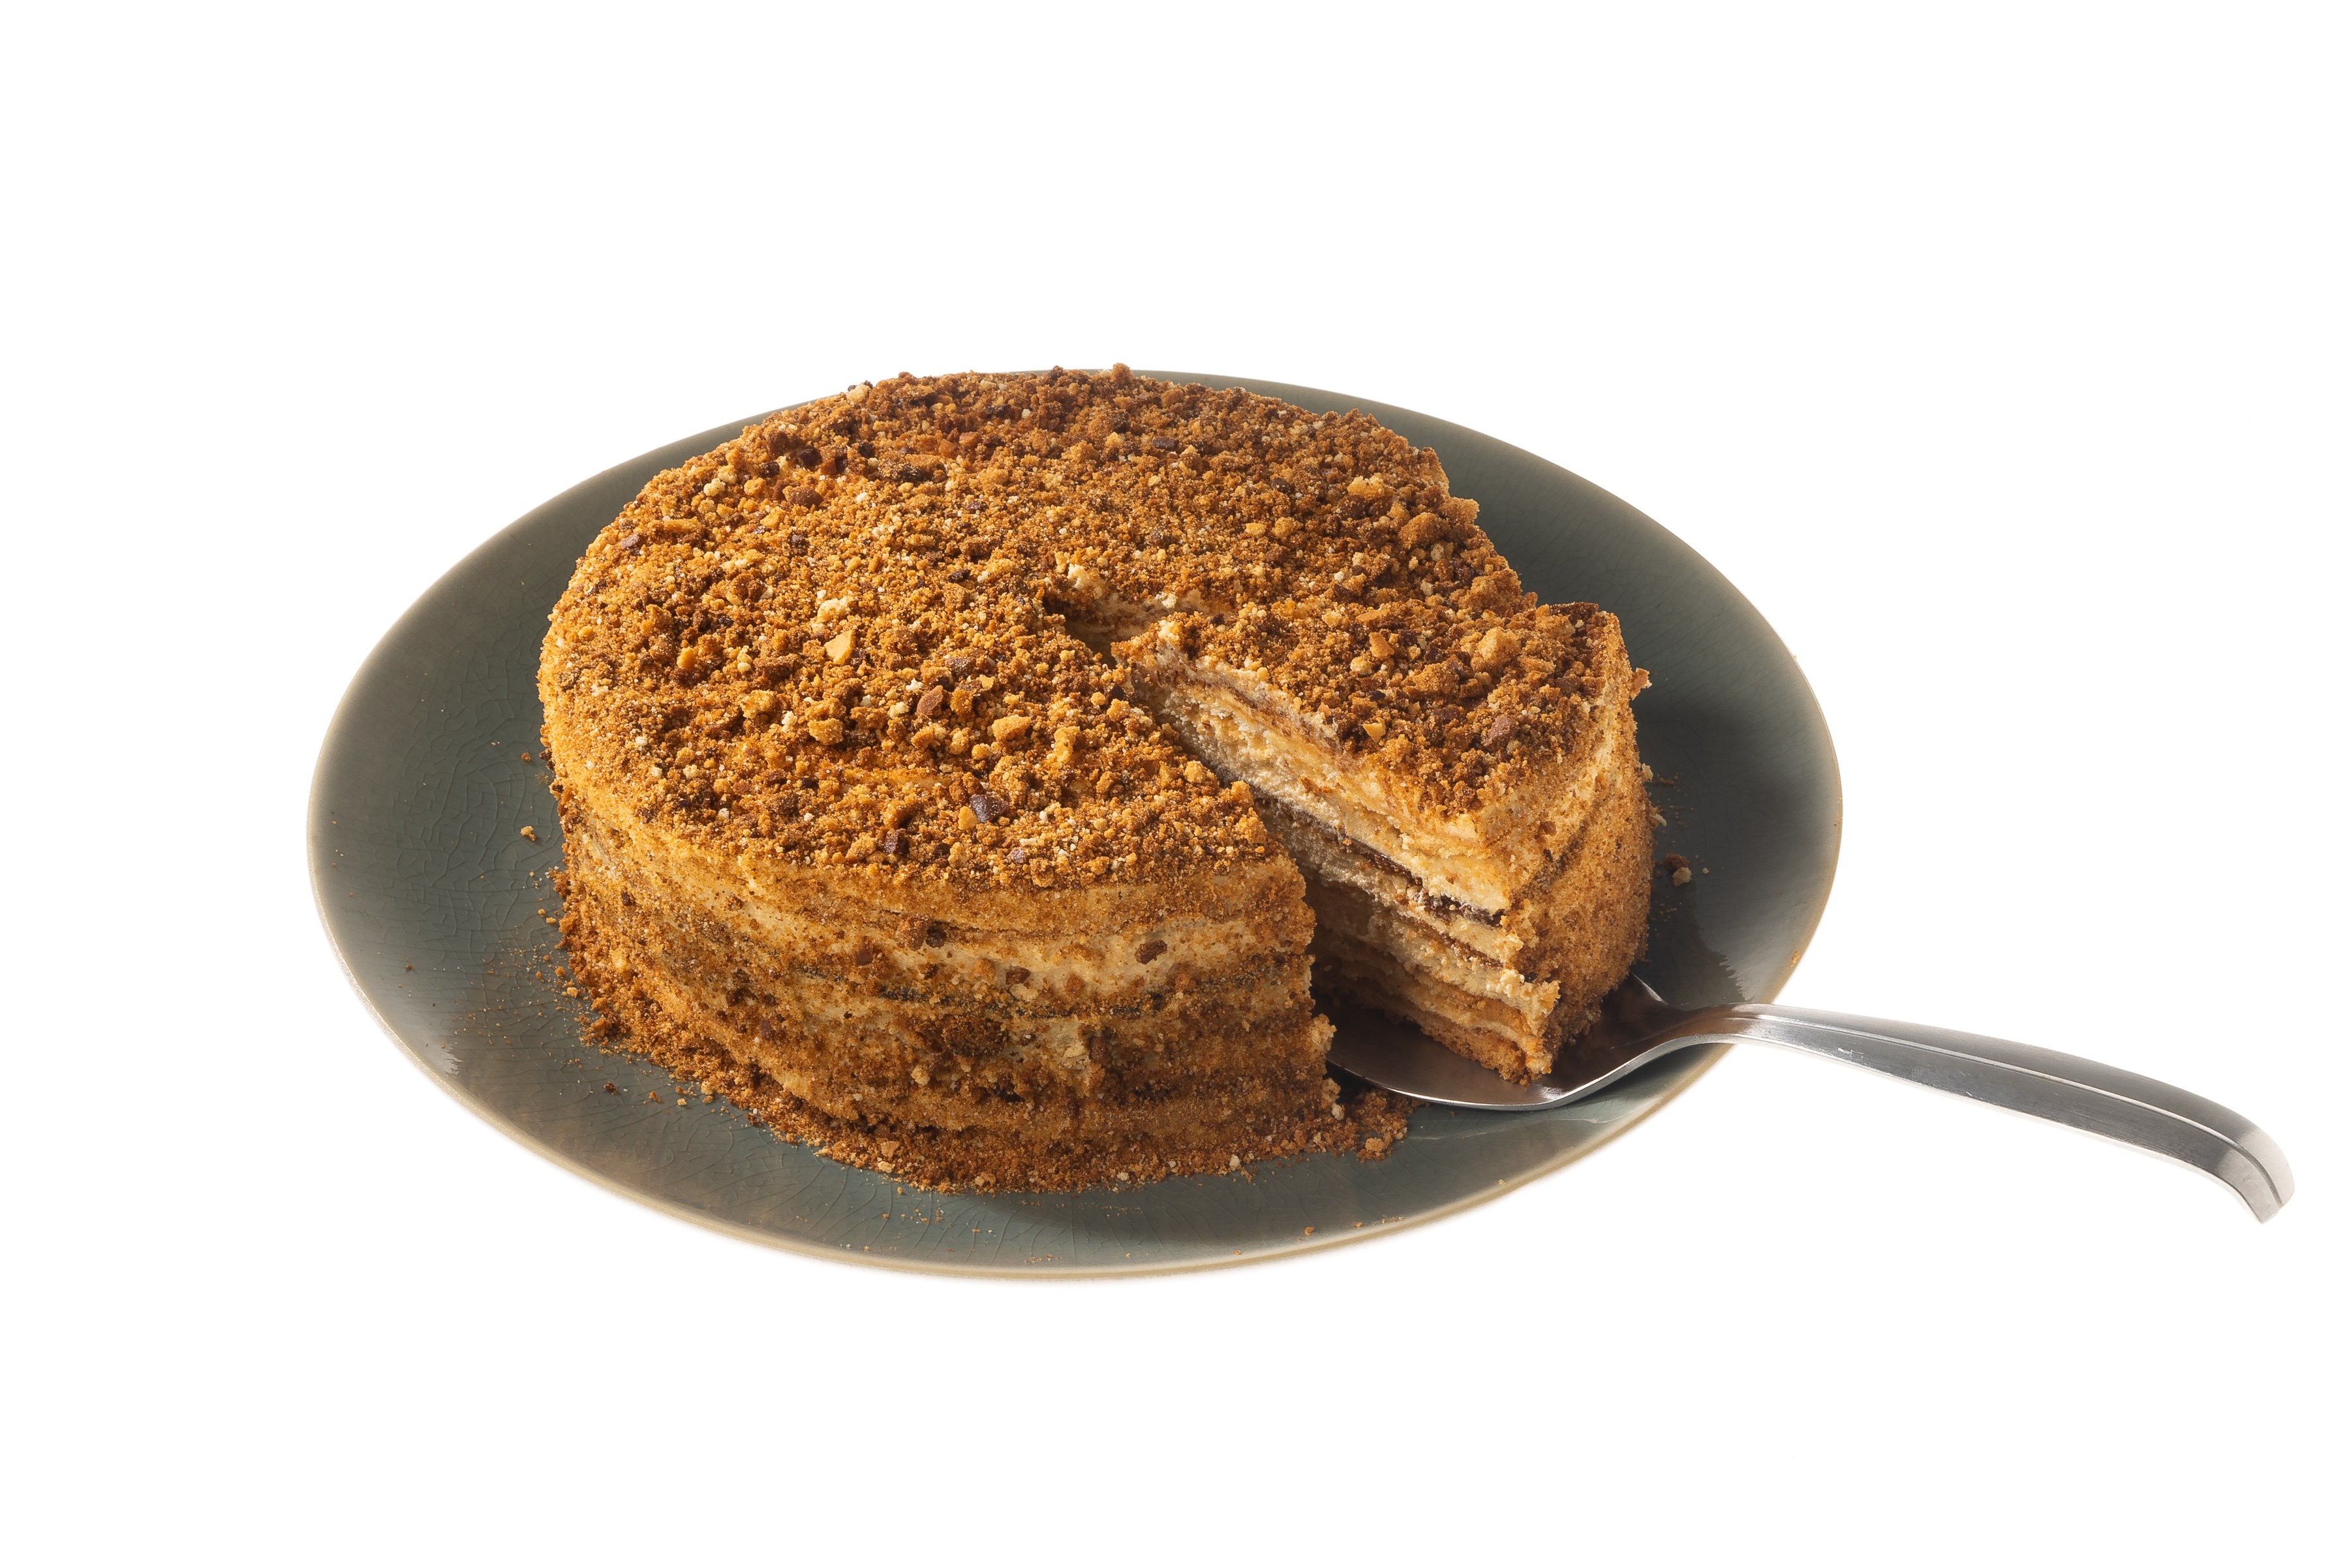 Торт Рыжик классический, пошаговый рецепт с фото на ккал